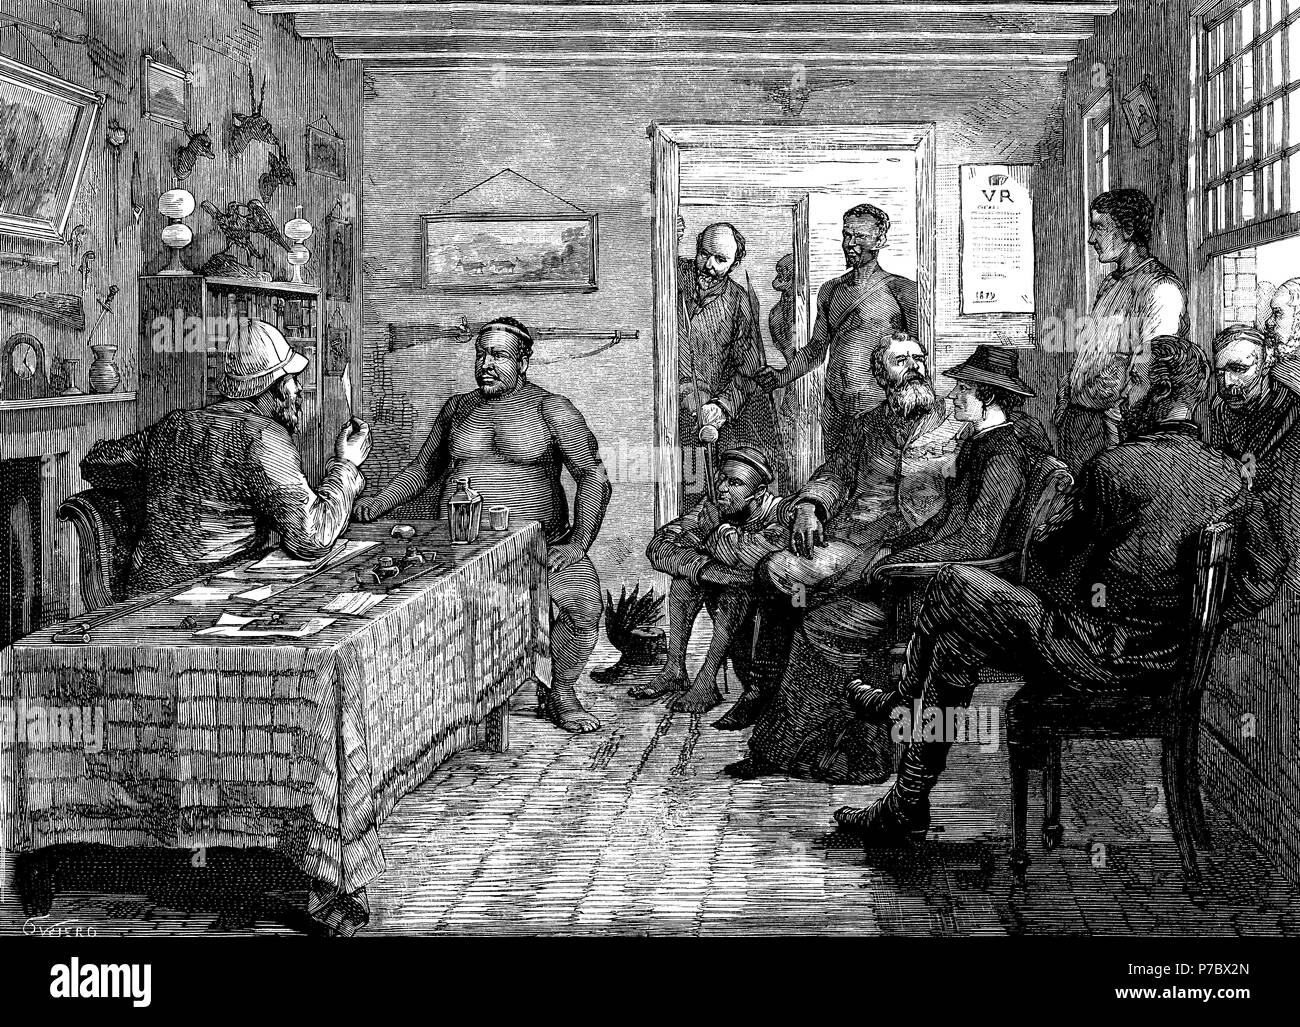 Sudáfrica. Conversaciones de paz con el líder zulú Cetshwayo kaMpande (1826-1884) en el marco de la guerra anglo-zulú. Grabado de 1879. Stock Photo